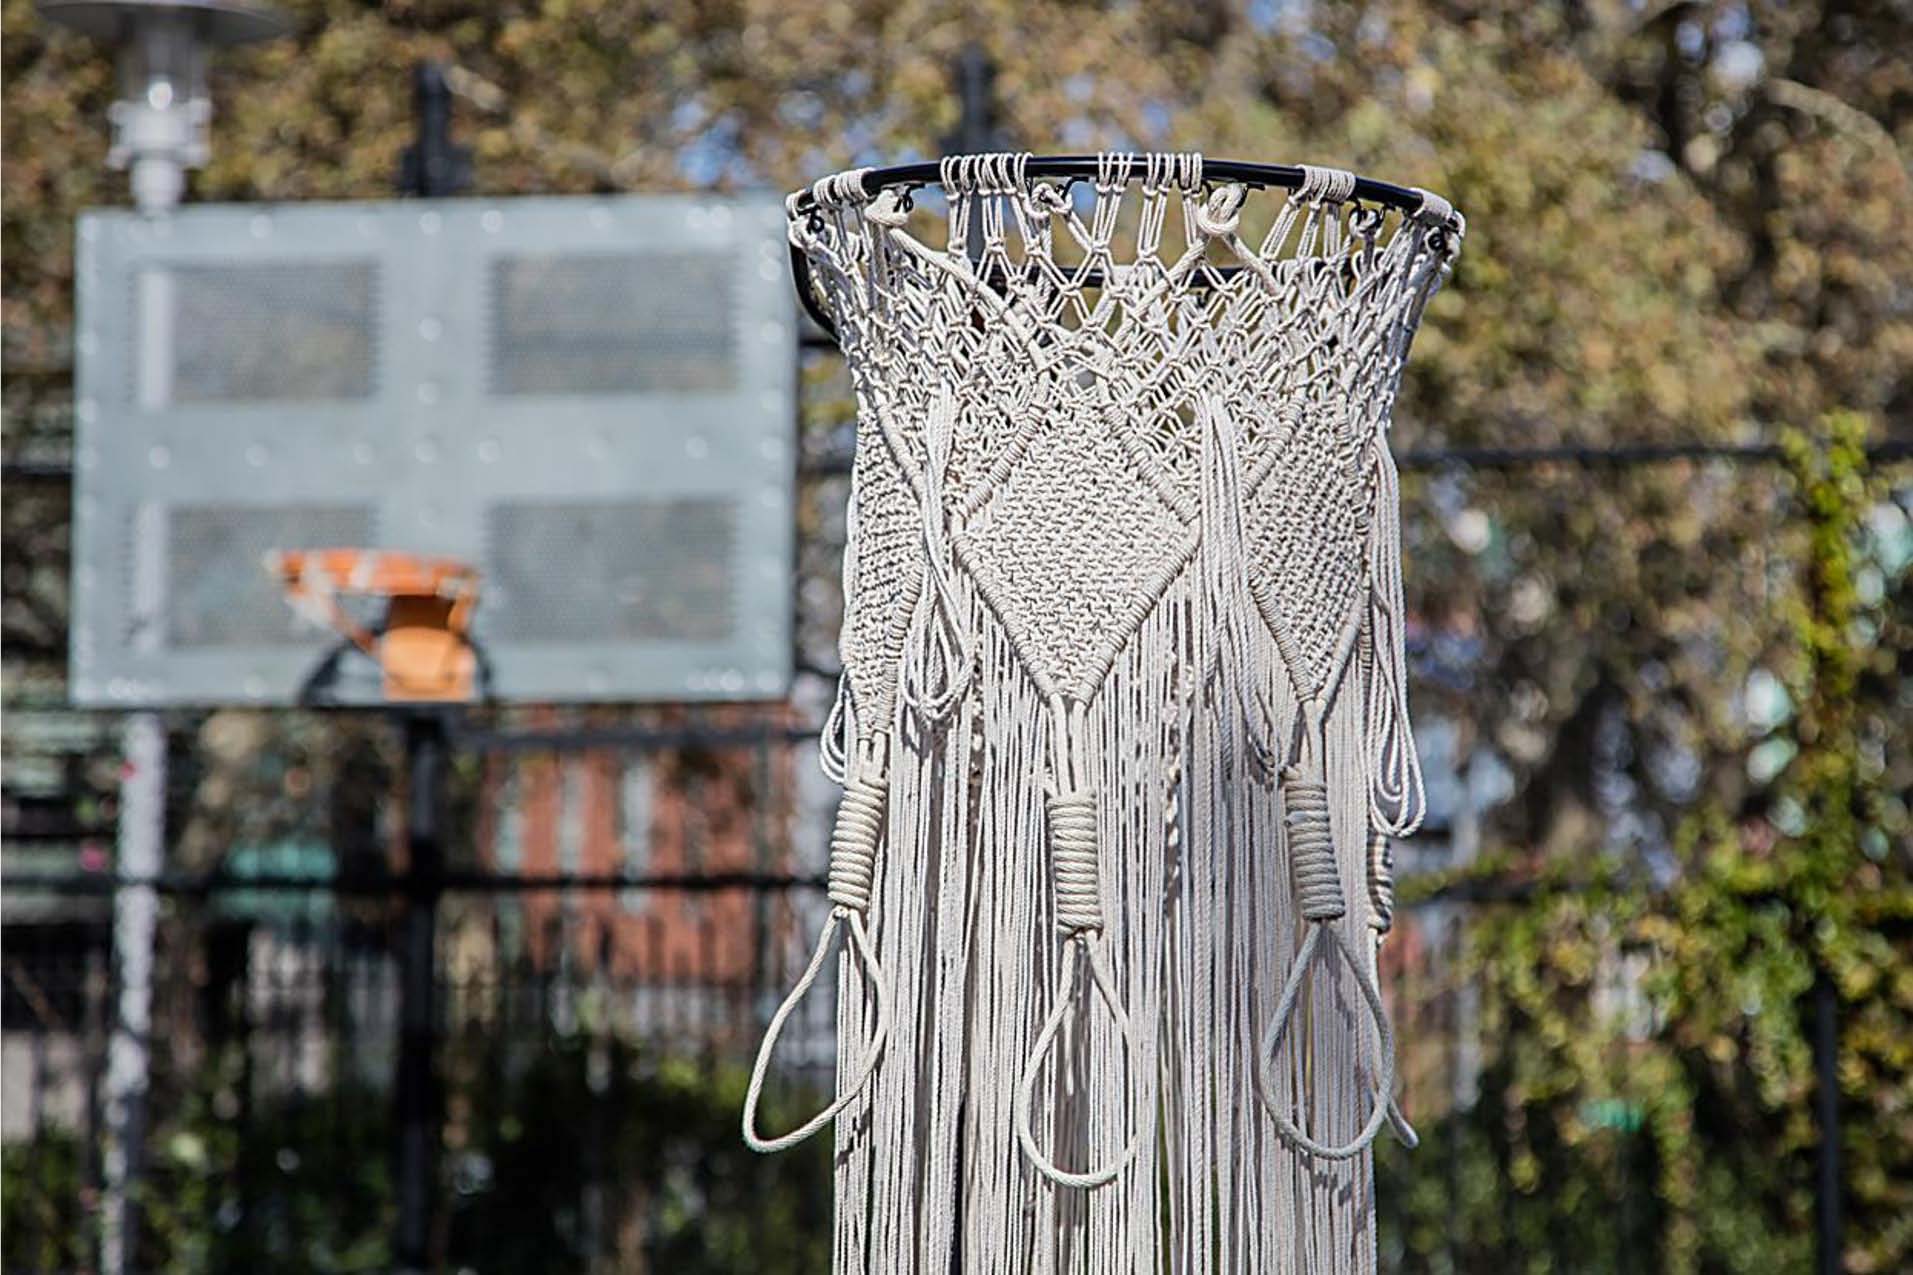 Photographie du bord d'un panier de basket-ball avec un filet en macramé suspendu.